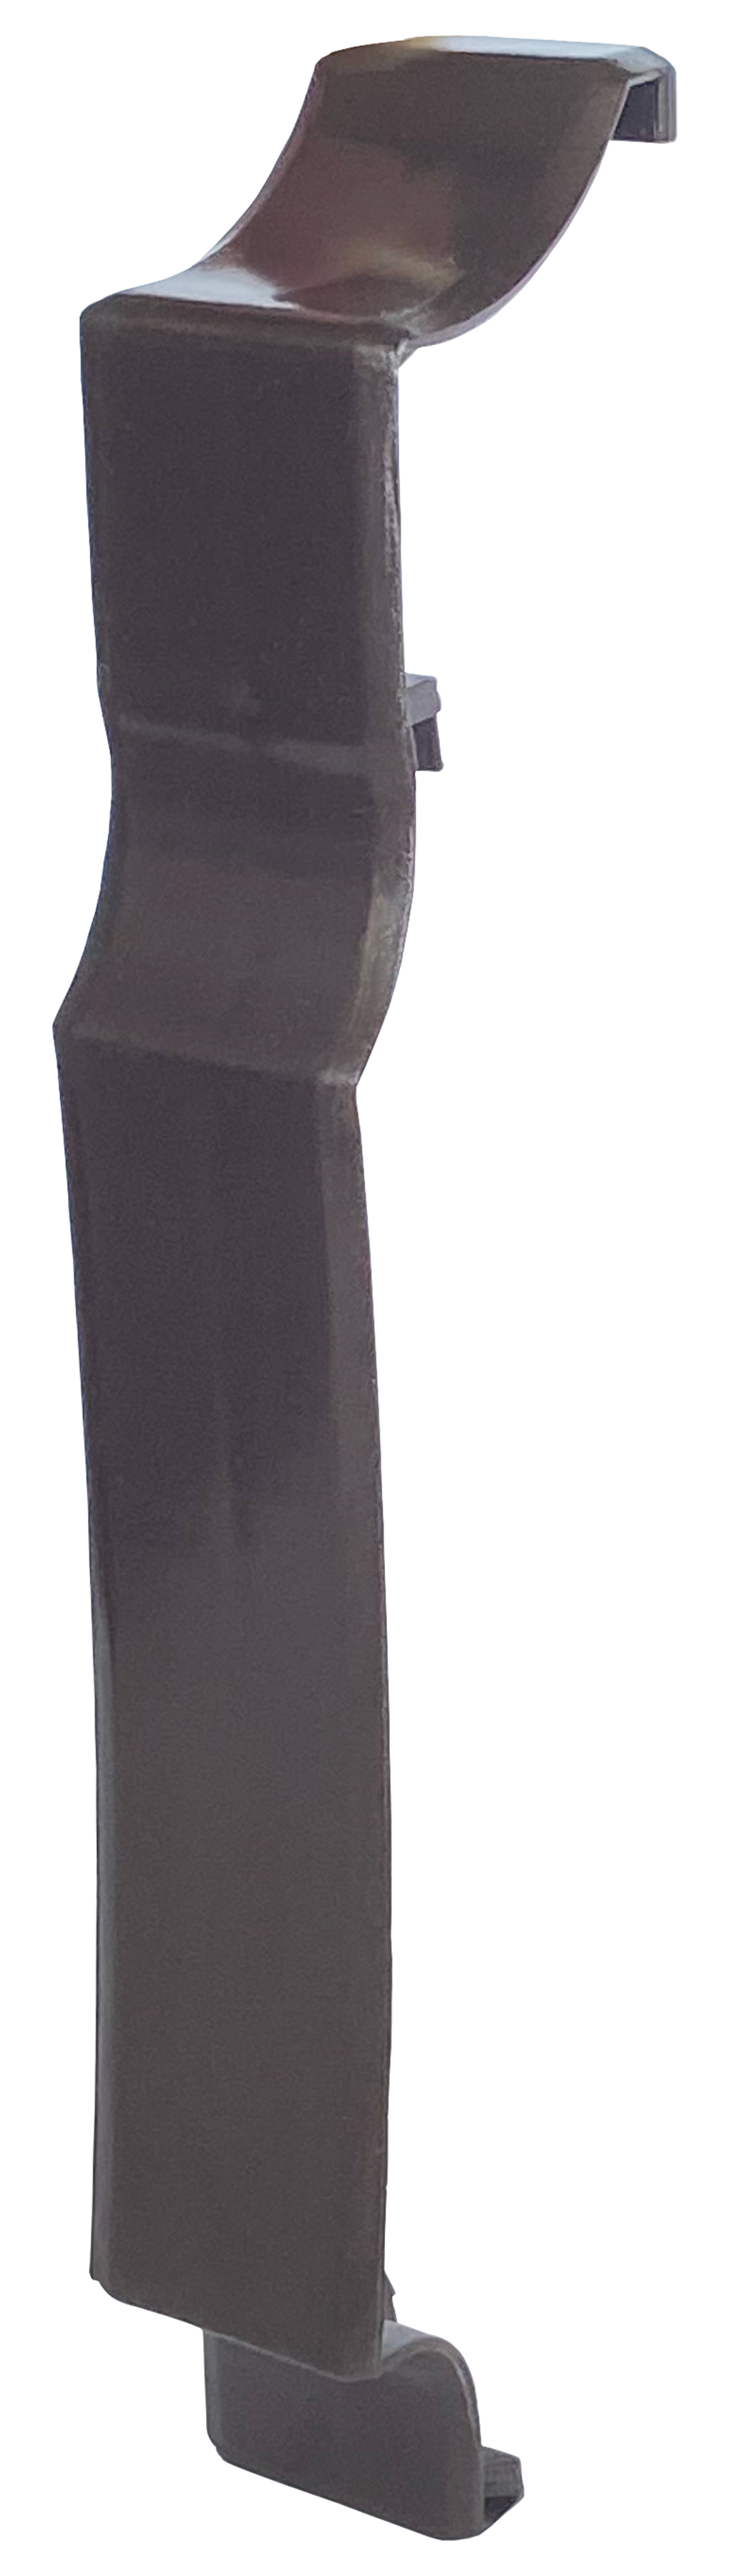 Ціна аксесуар для плінтусного нагрівача Термія планка з'єднувальна ПЗ (коричнева) в Житомирі